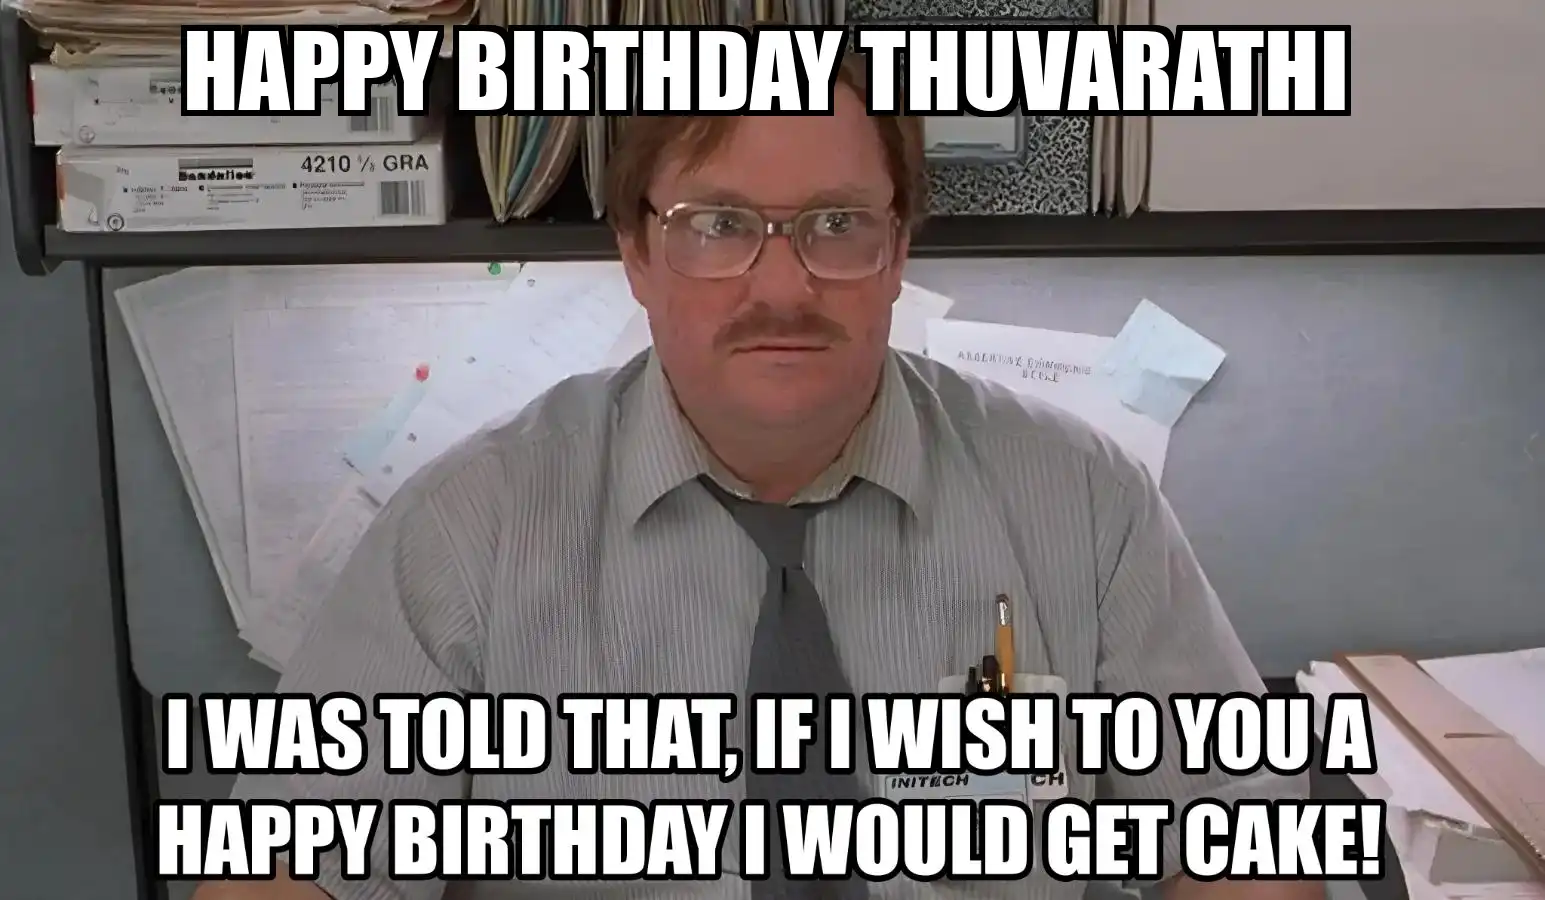 Happy Birthday Thuvarathi I Would Get A Cake Meme